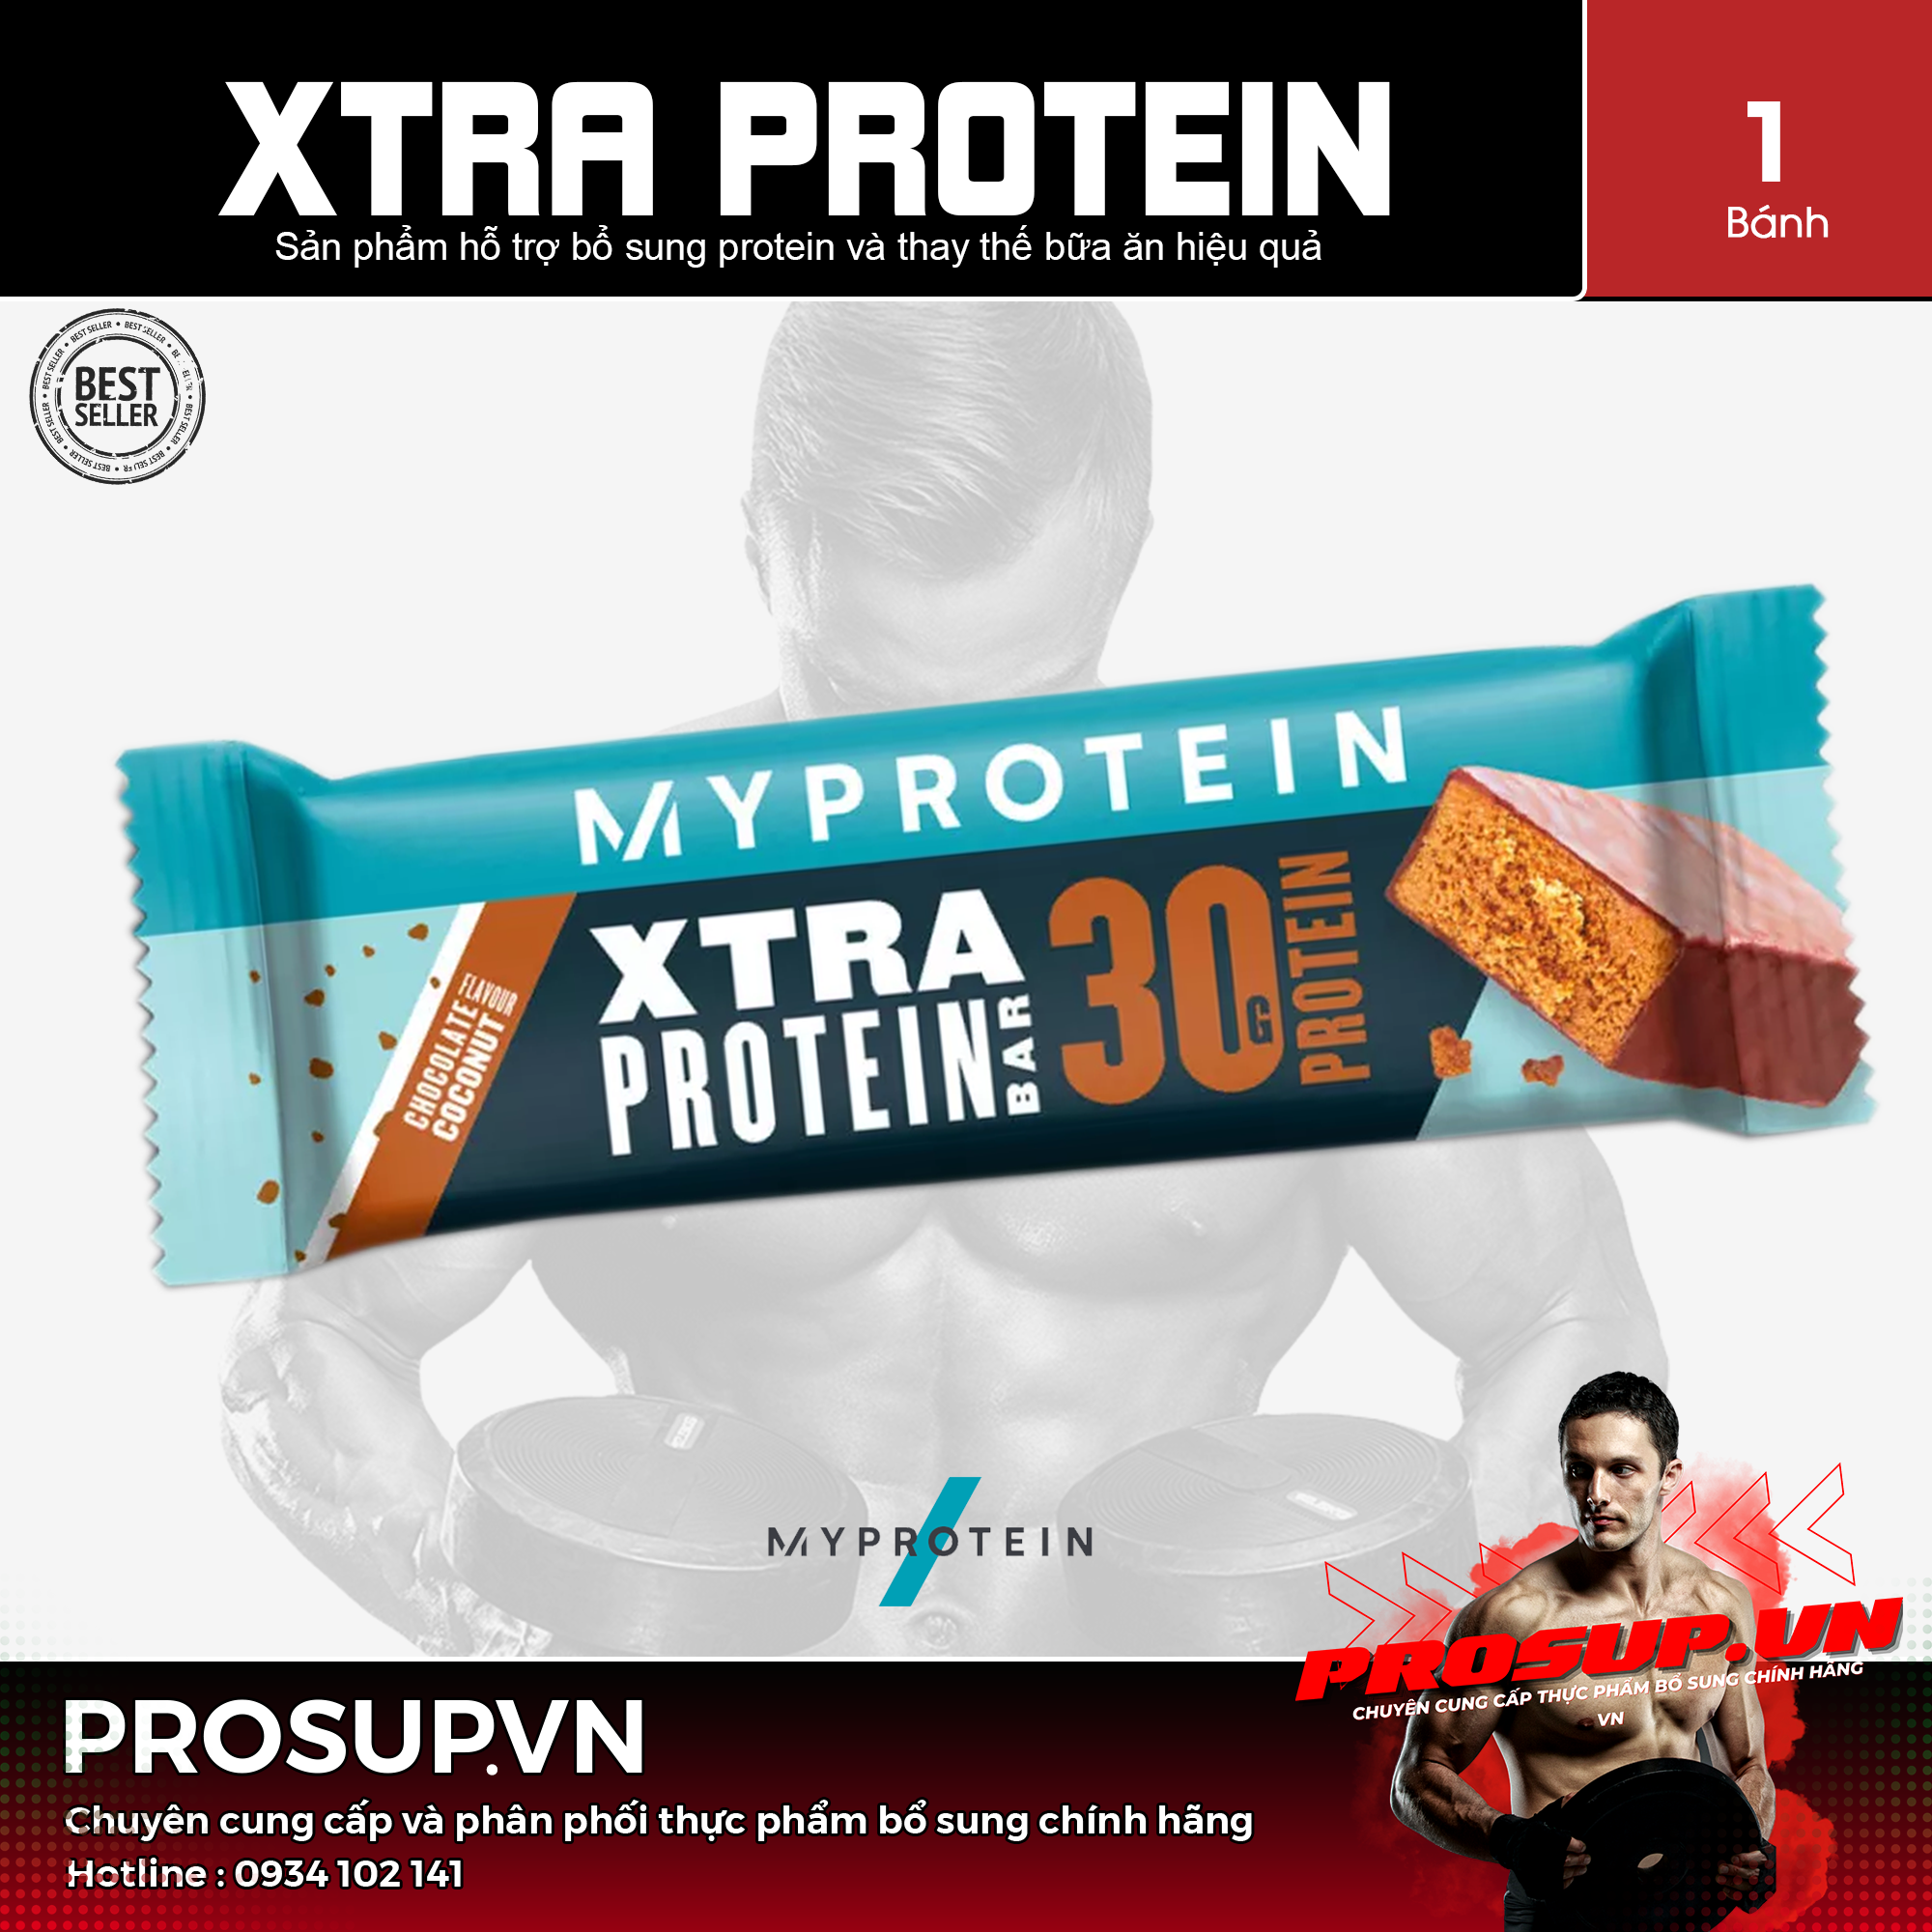 Xtra Protein - (80g/1 thanh) My Protein - Bar protein bữa ăn thay thế cung cấp 30g protein và năng...